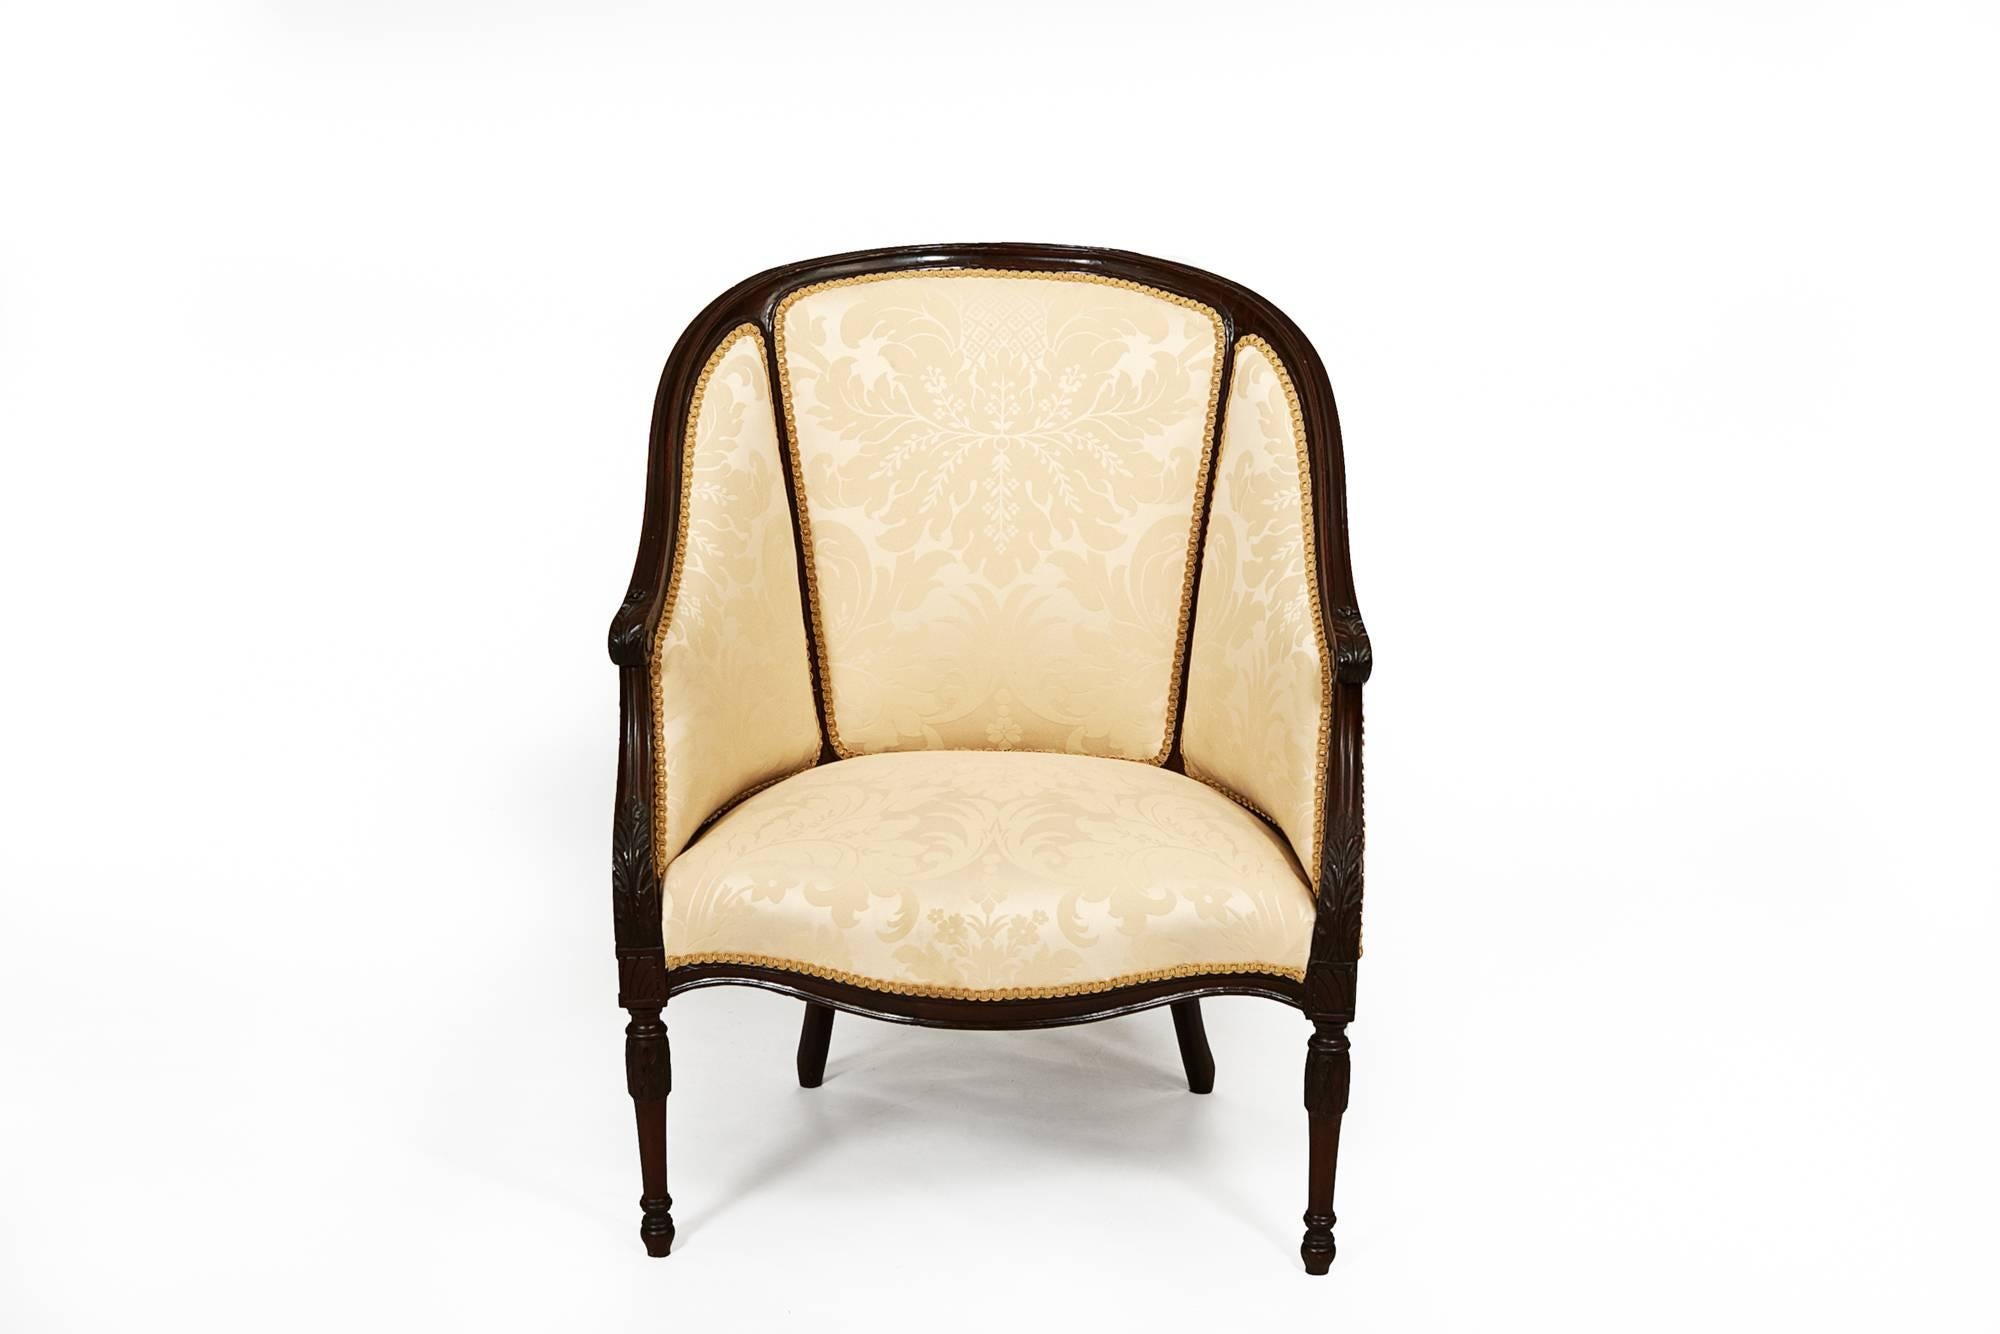 Chaise à baignoire Hepplewhite en acajou du 19e siècle, d'époque George III, dans le goût français.